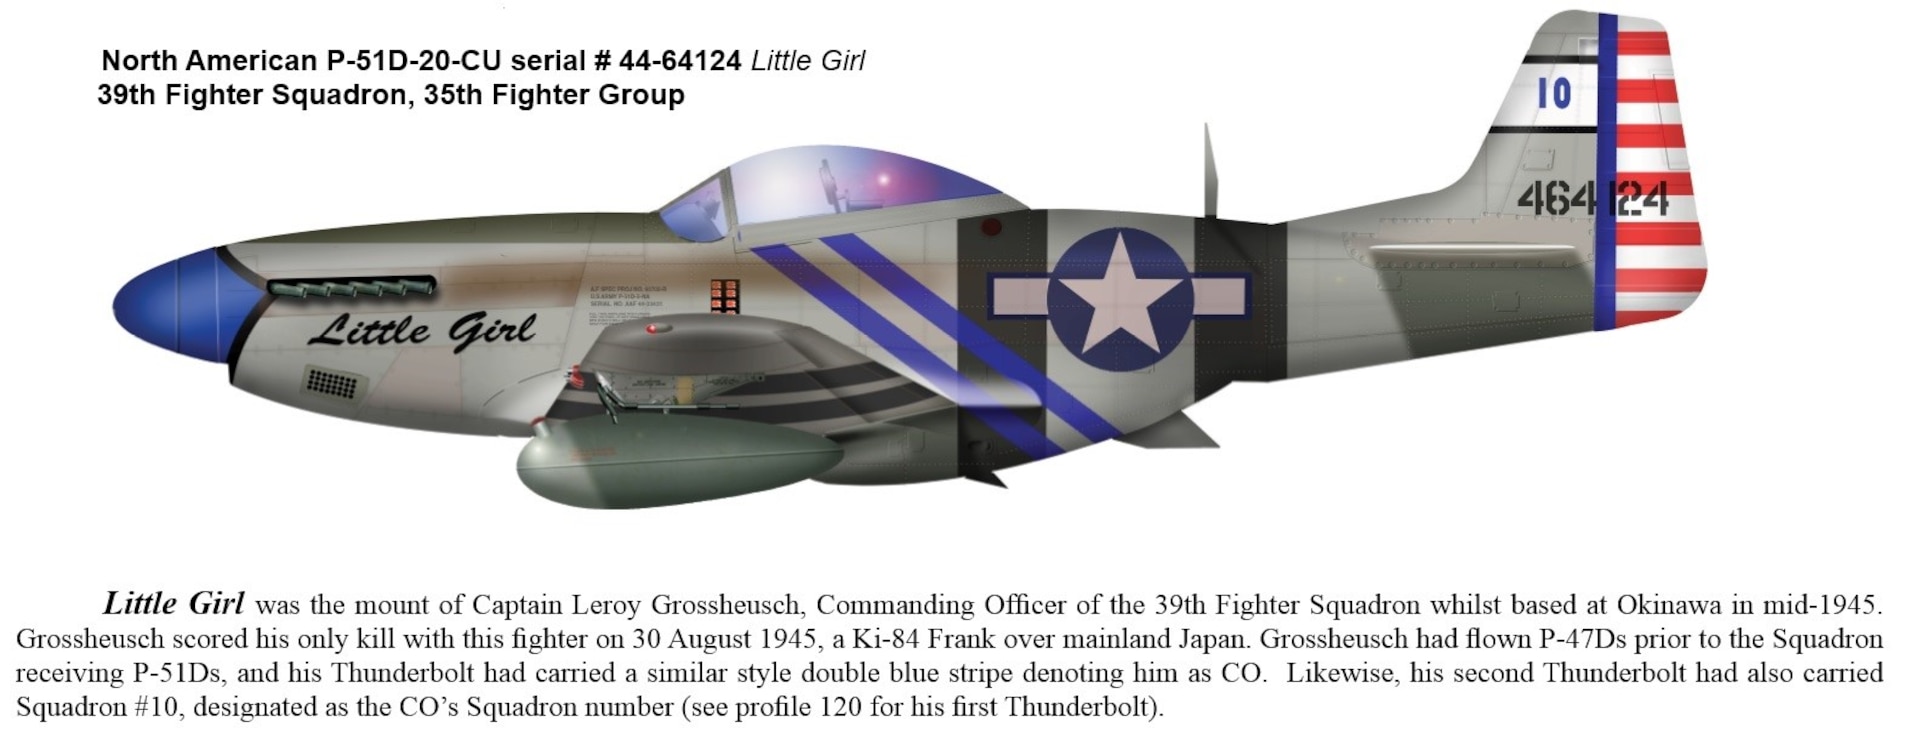 The famed P-51 “Little Girl”